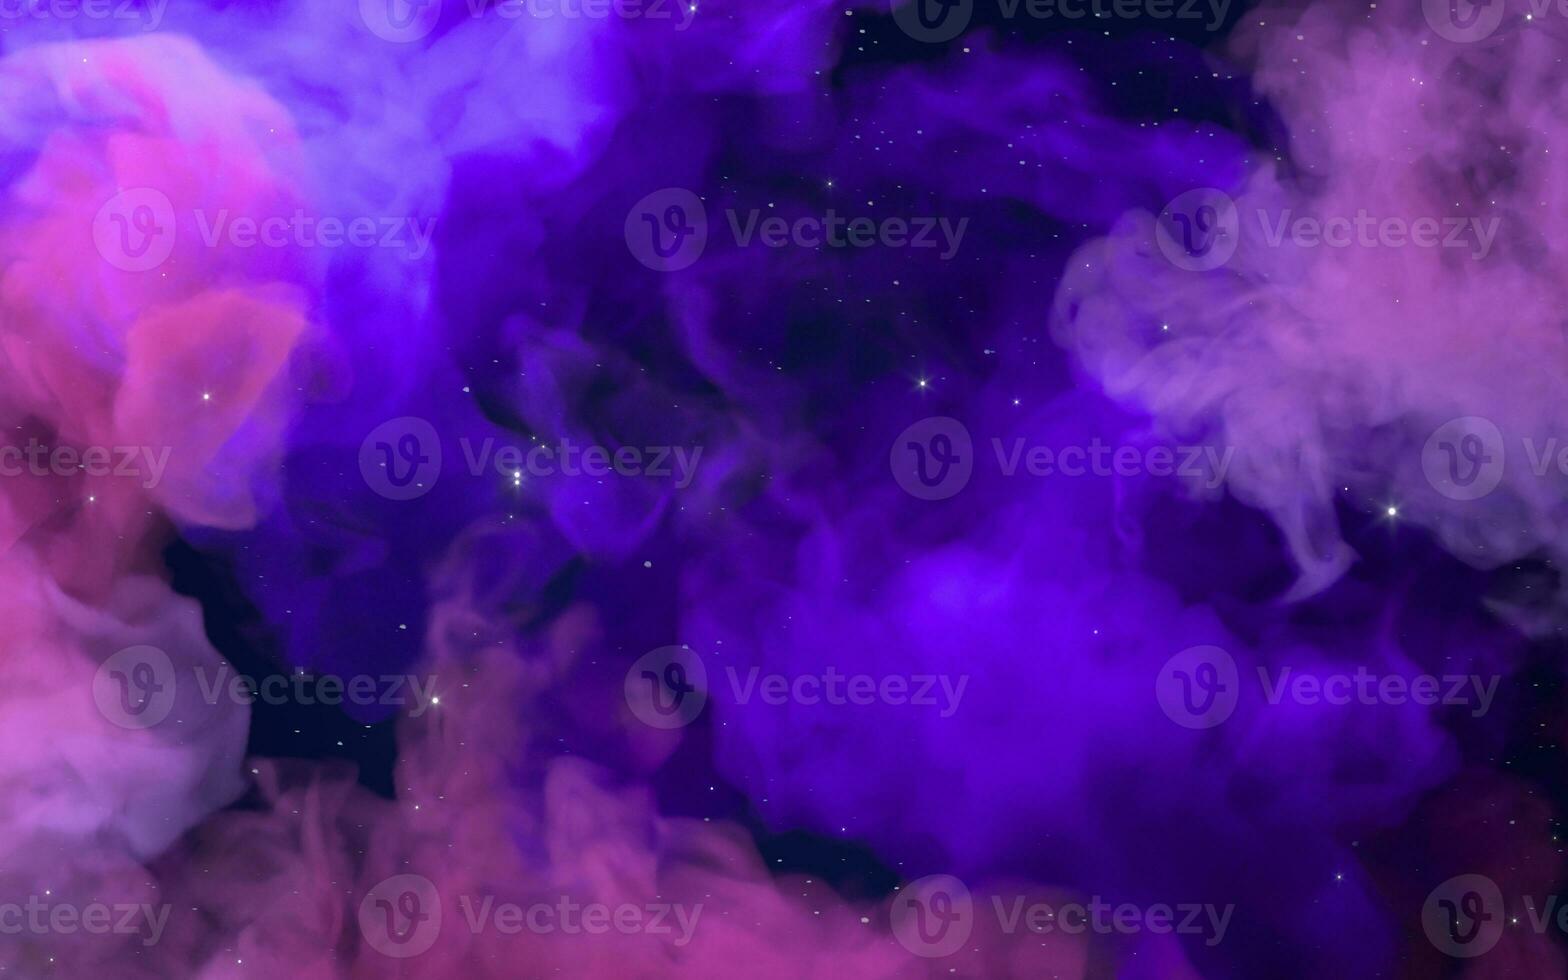 nebulae och färgad rök, 3d tolkning. foto